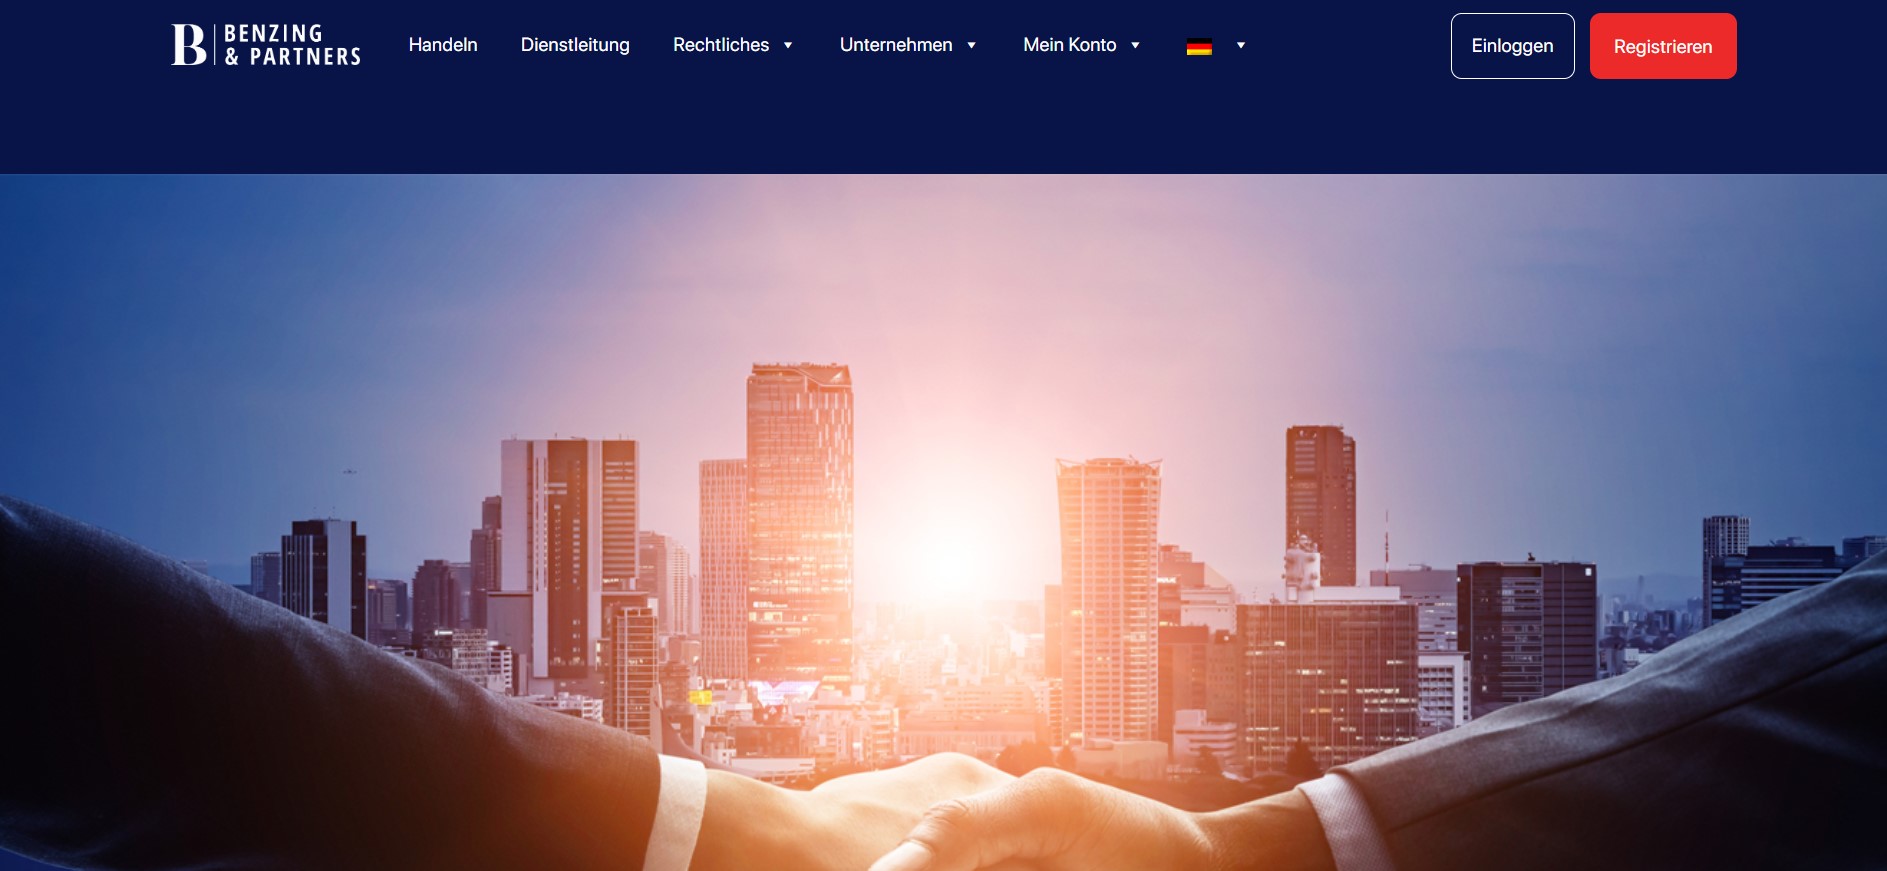 Benzing-Partners website